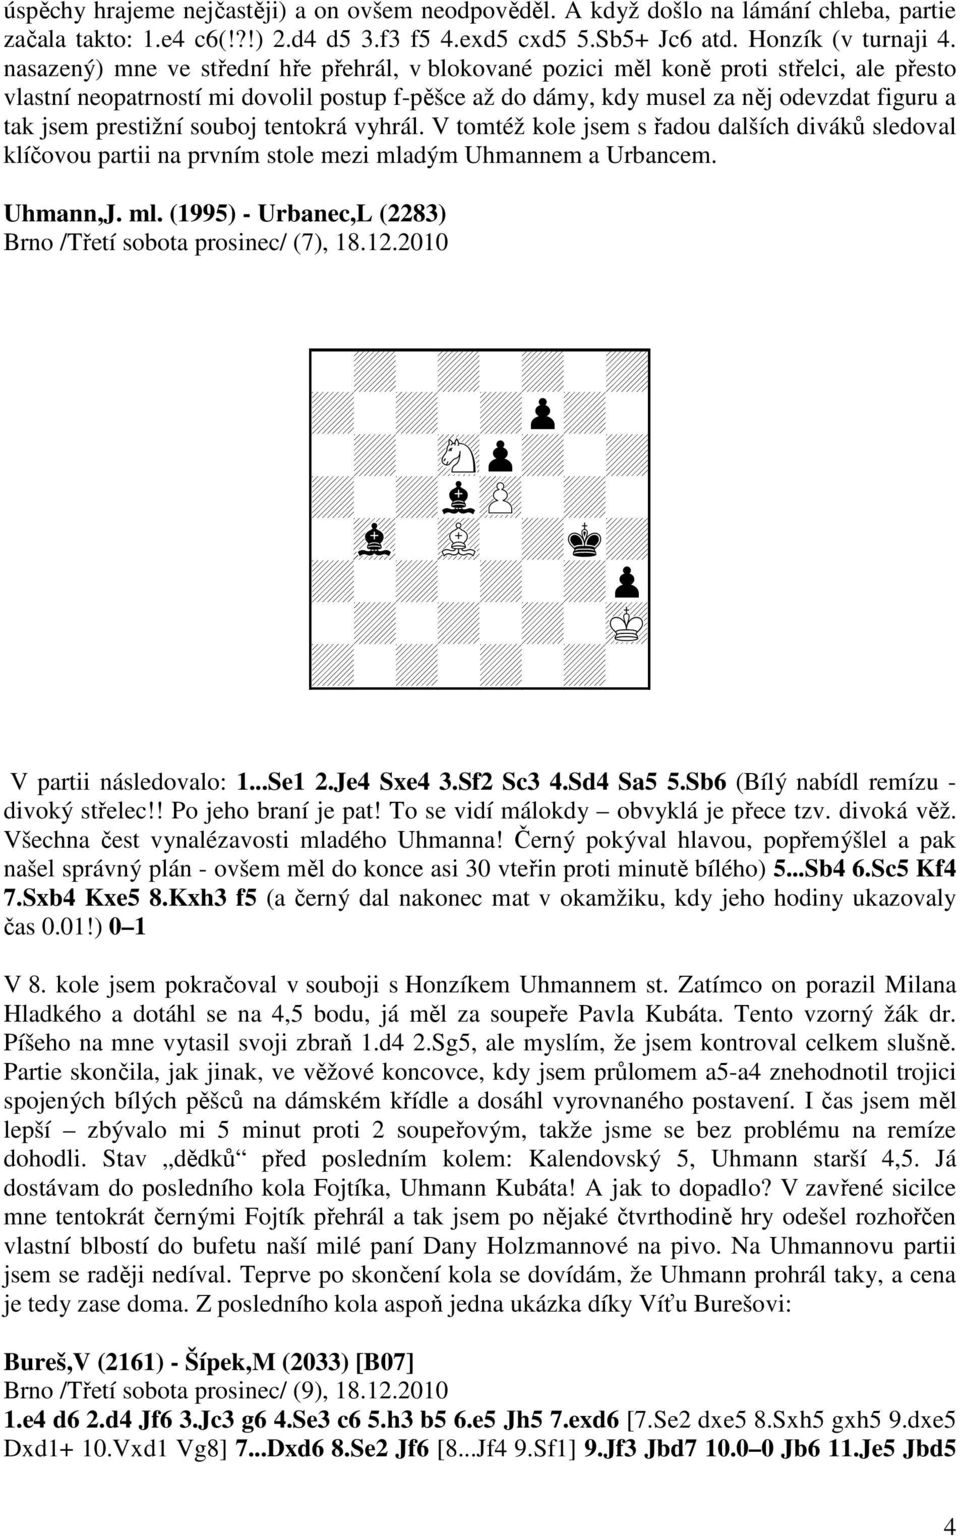 prestižní souboj tentokrá vyhrál. V tomtéž kole jsem s řadou dalších diváků sledoval klíčovou partii na prvním stole mezi mladým Uhmannem a Urbancem. Uhmann,J. ml. (1995) - Urbanec,L (2283) Brno /Třetí sobota prosinec/ (7), 18.